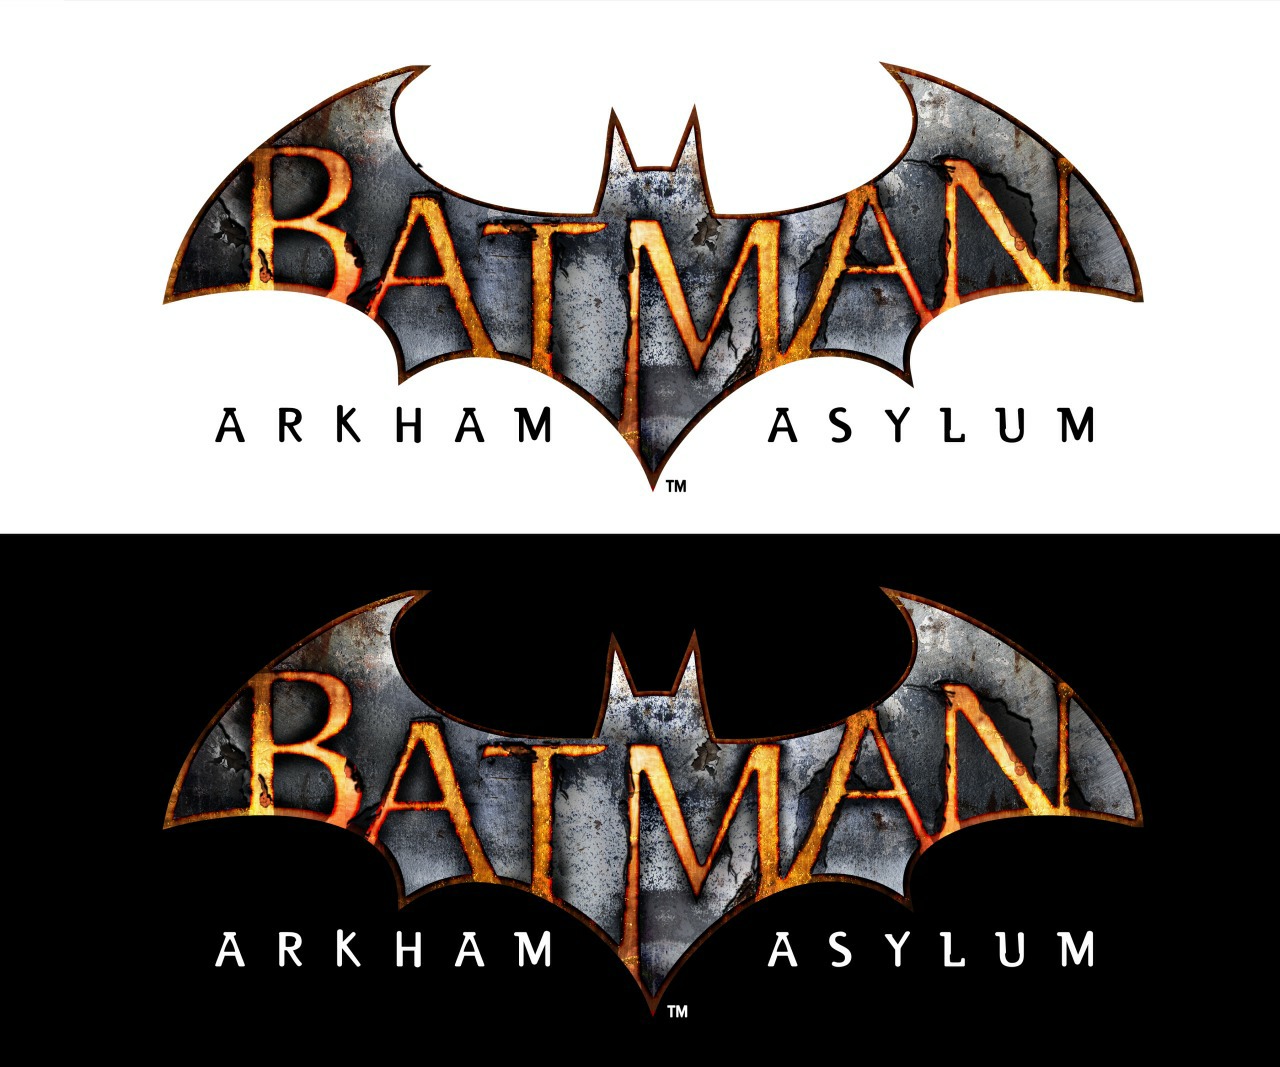 Arkham asylum Logos